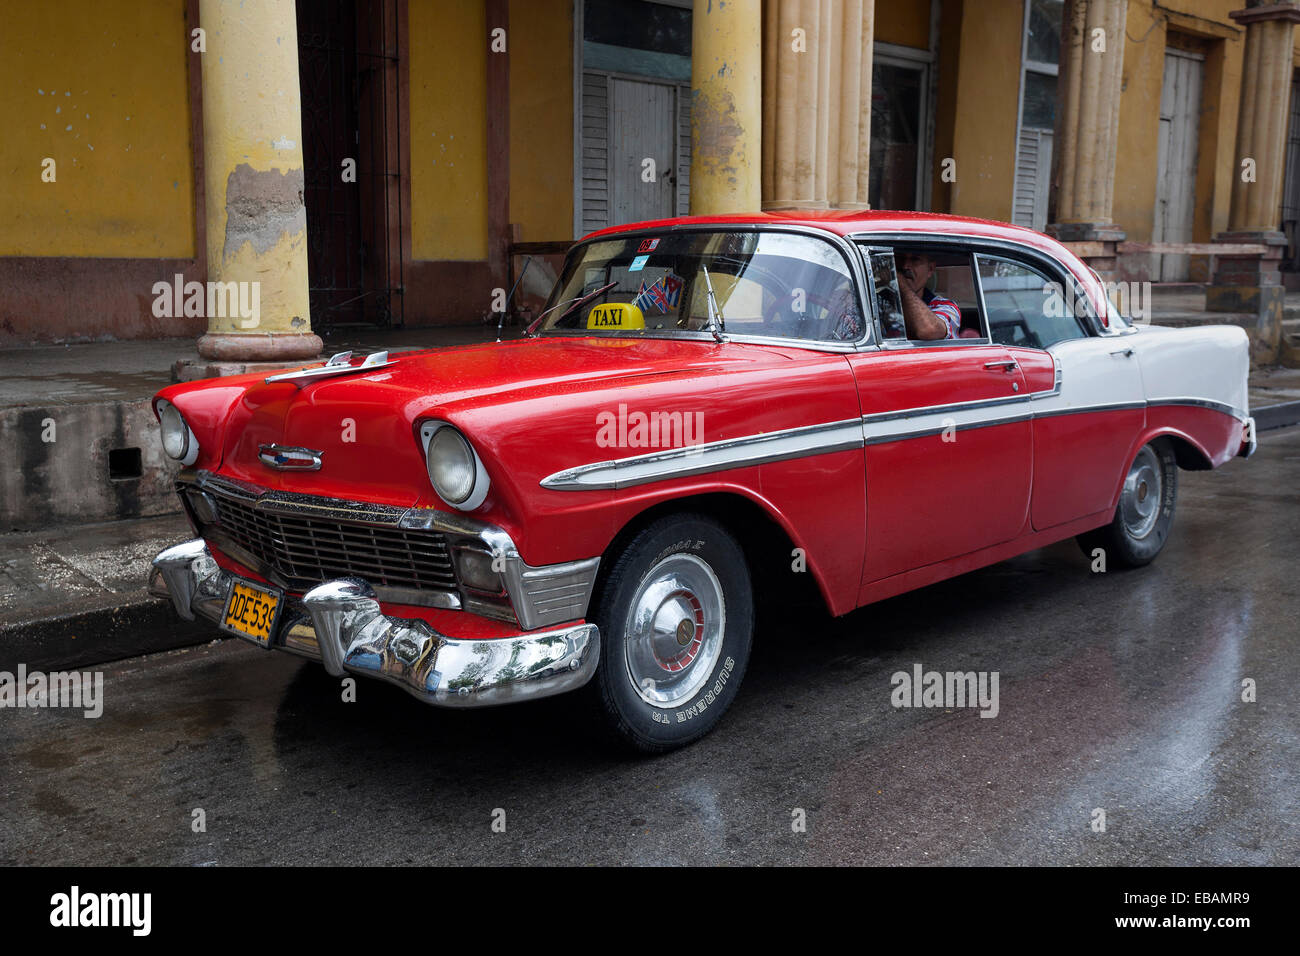 Chevrolet vintage des années 50, Baracoa, Cuba Banque D'Images